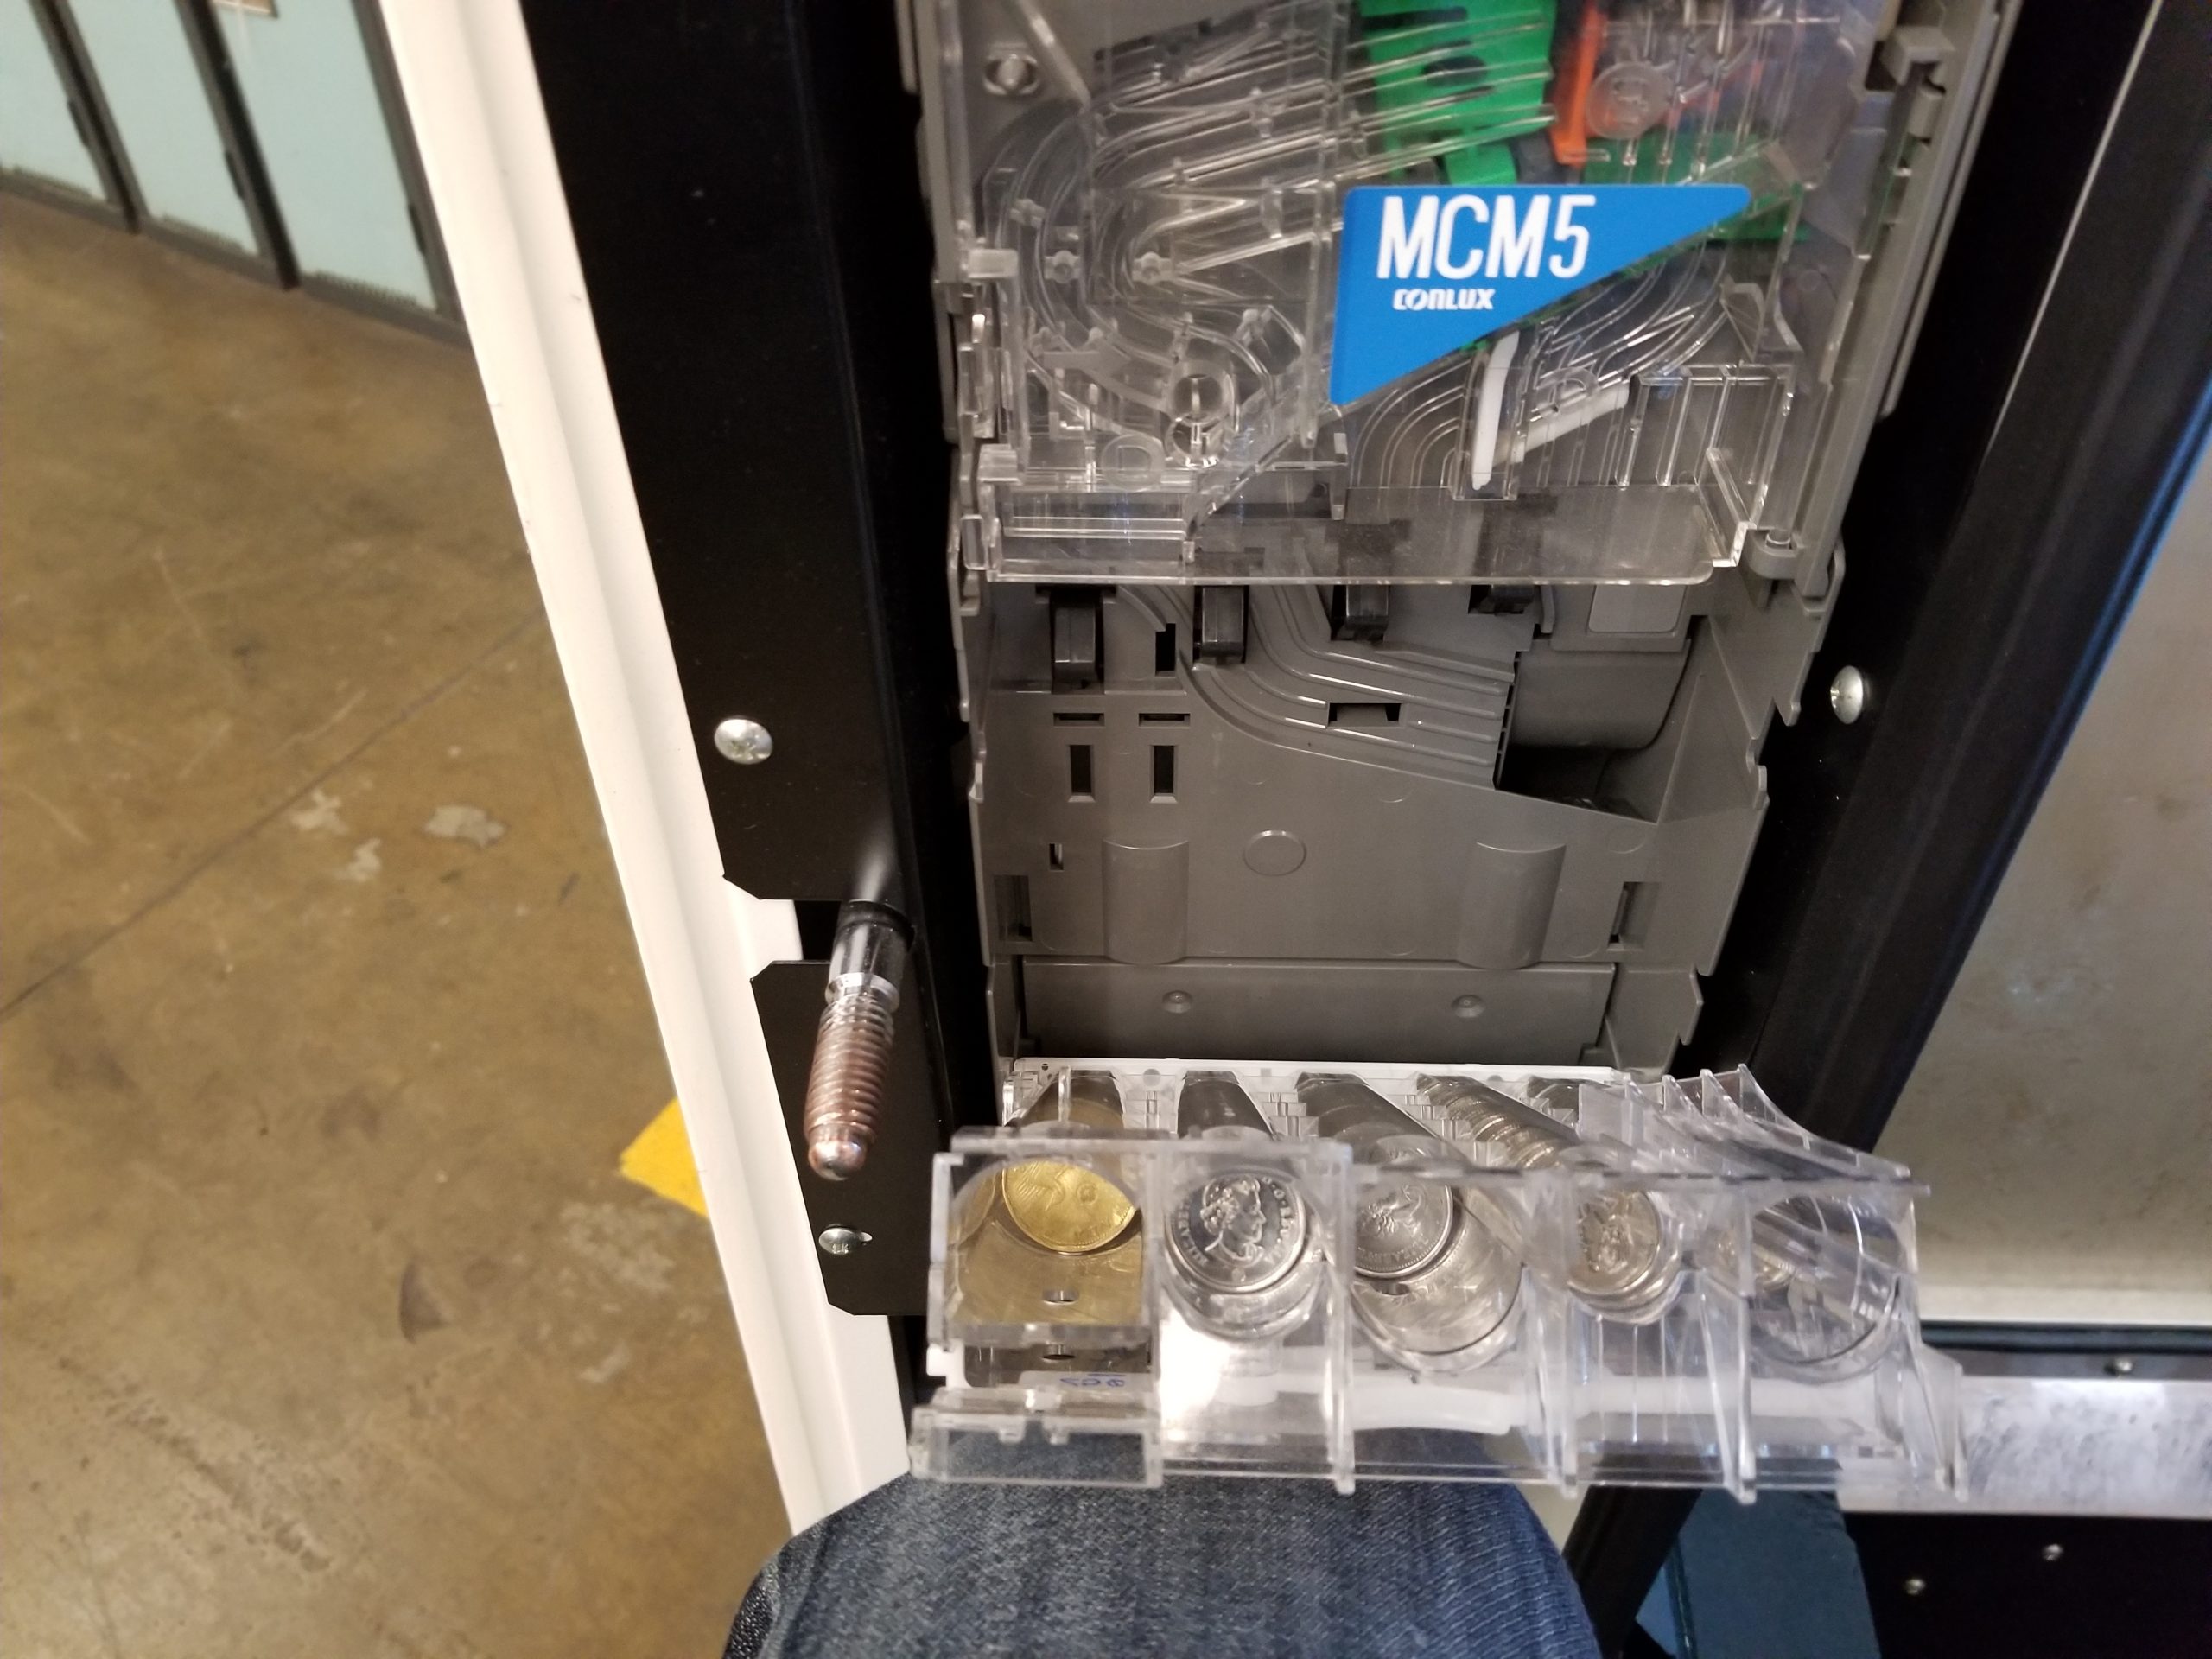 coin jam inside vending machine